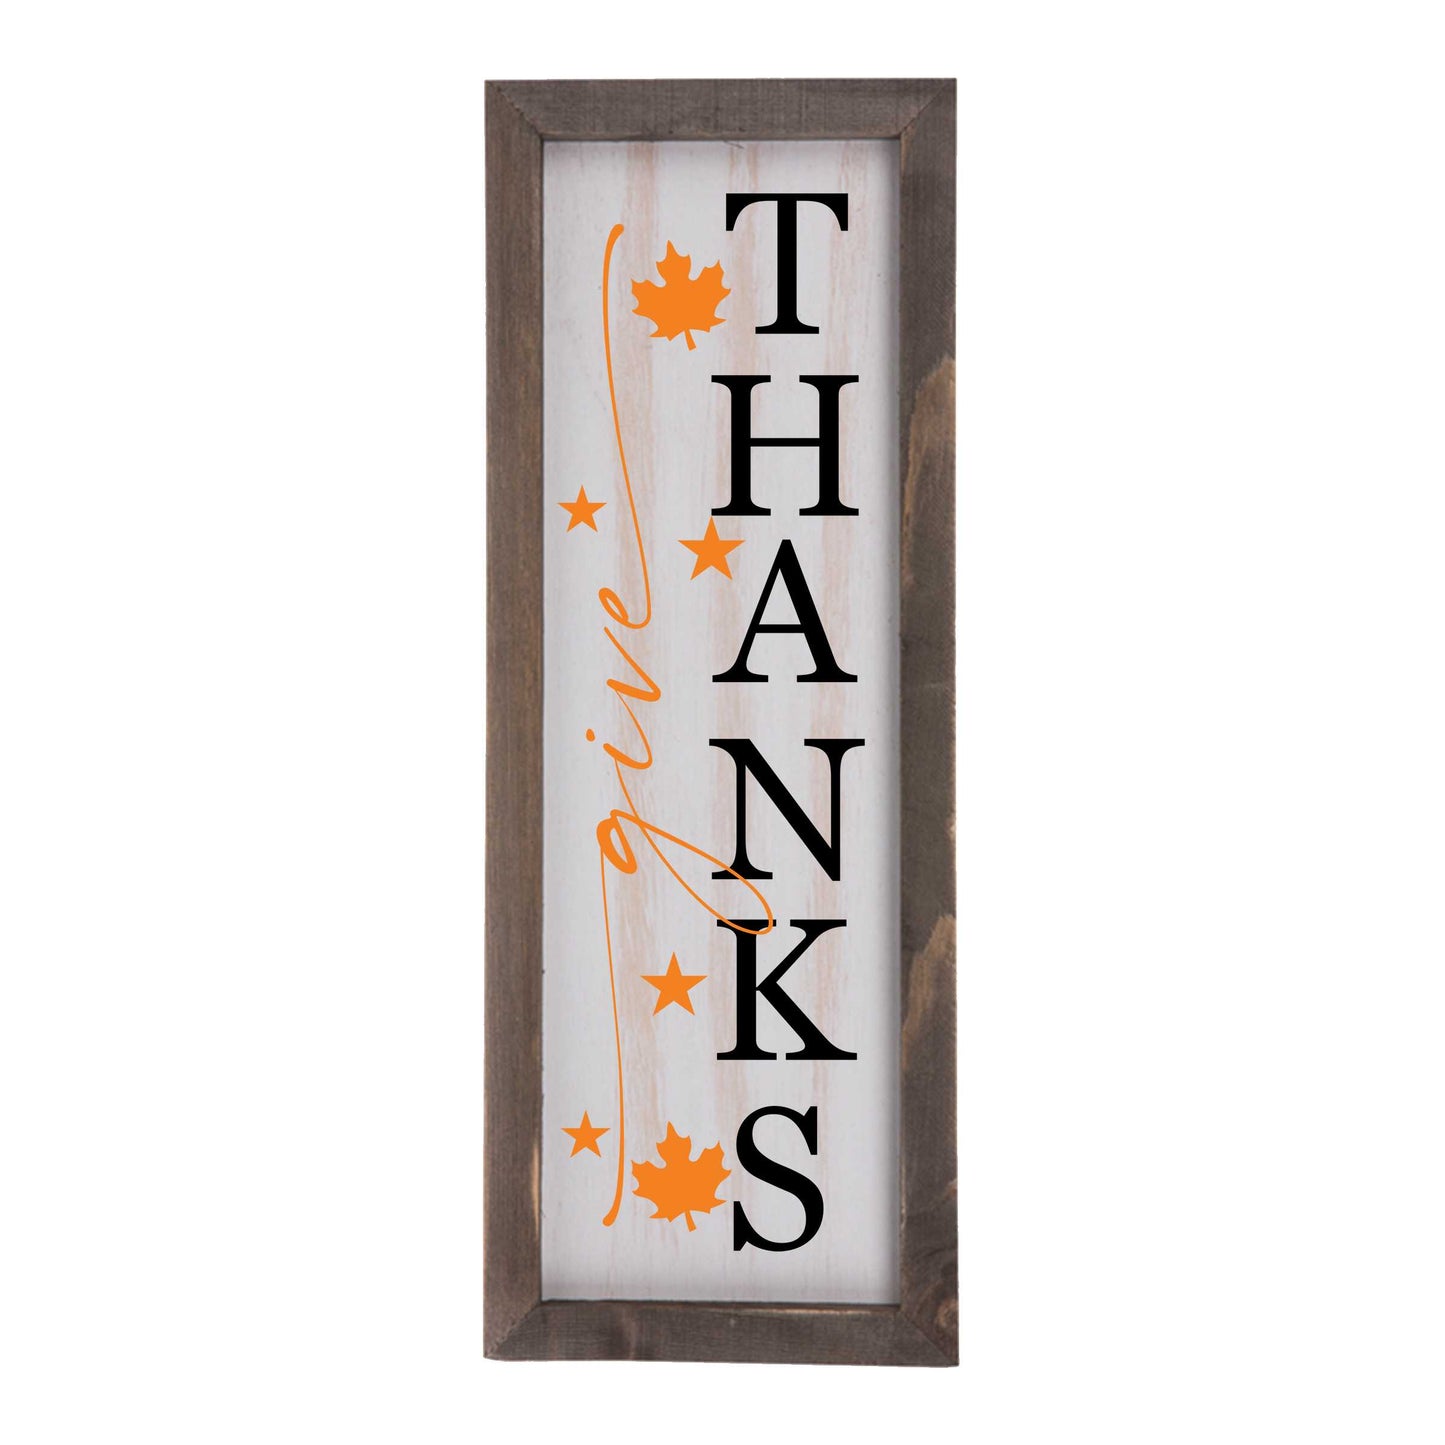 Give Thanks Whitewashed Wood Frame Sign | 15" x 5.5" Christian Farmhouse Decor amazingfaithdesigns